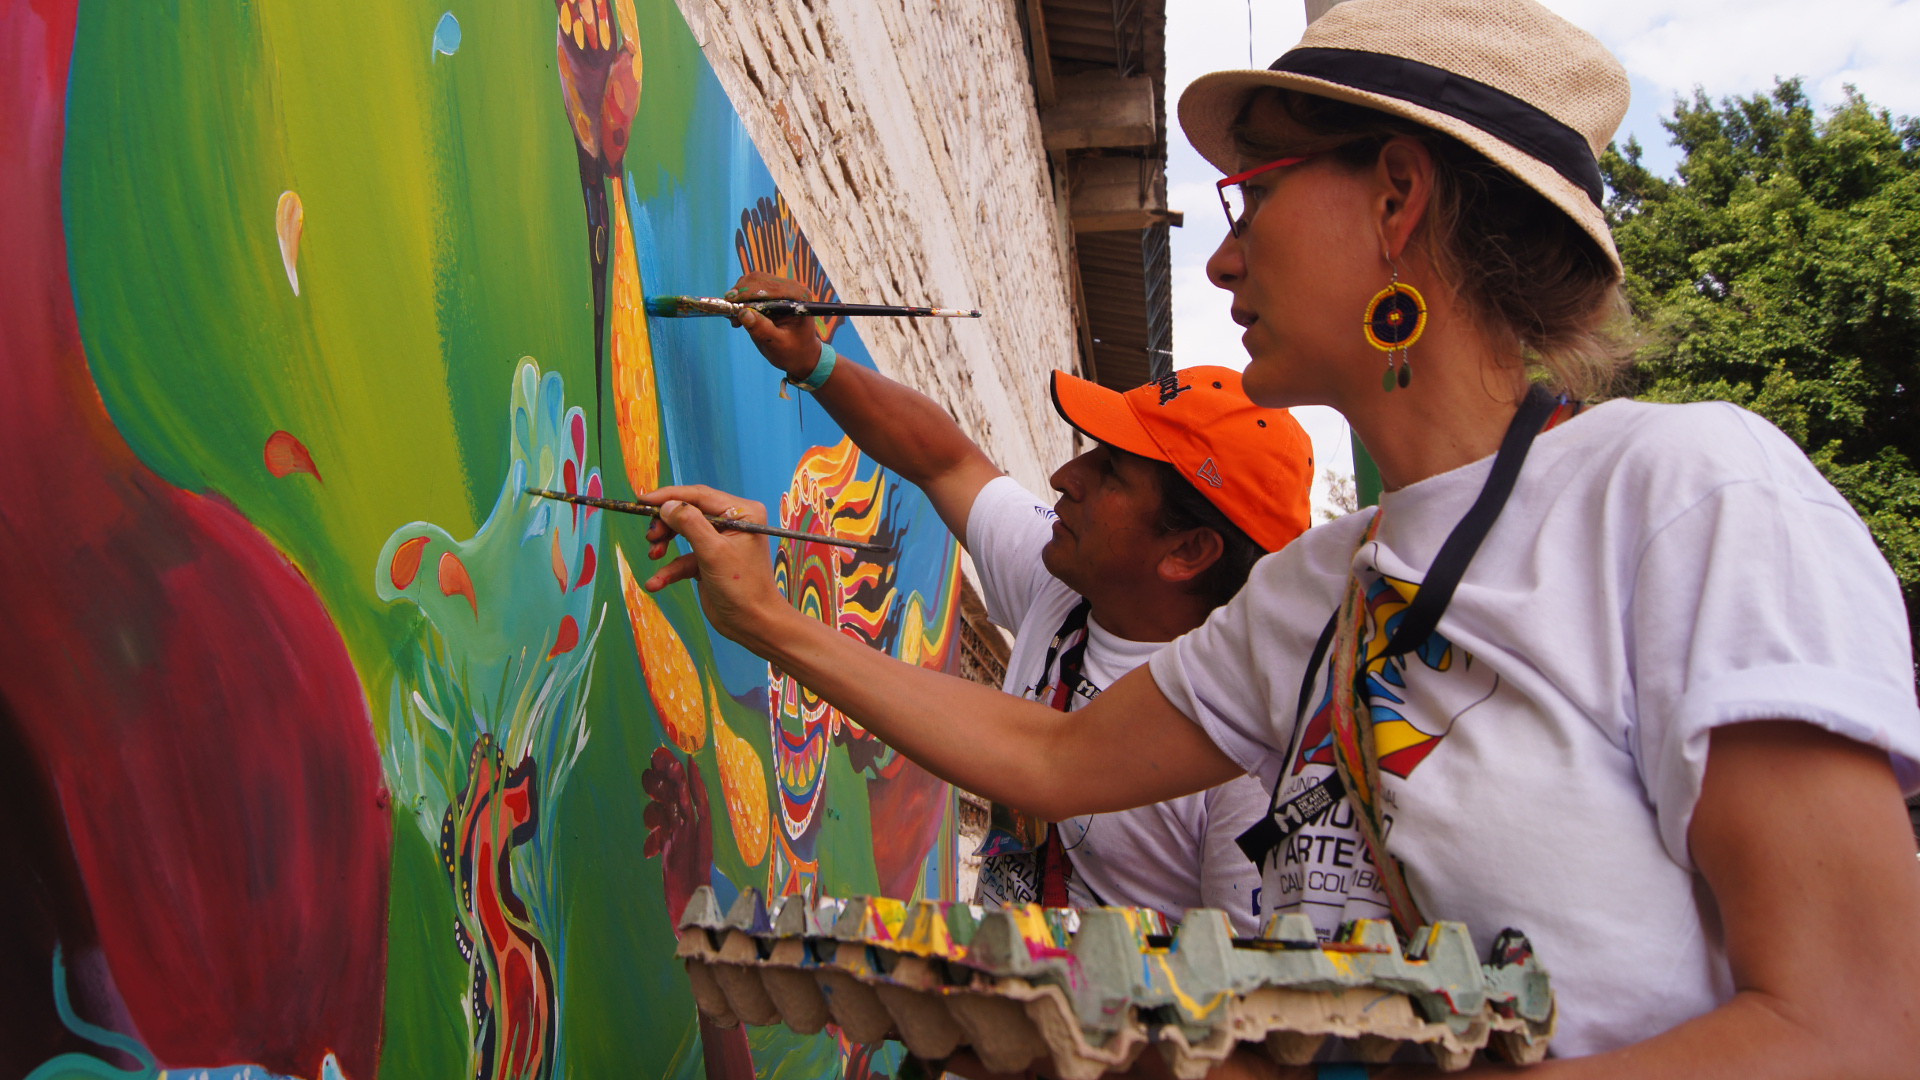 Anne Stickel (vorne) und Warner Benitez Fachpersonen im Projekt "Mural Comunitario" im Centro Monseñor Léonidas Proaño, Quito Sur, Ecuador.